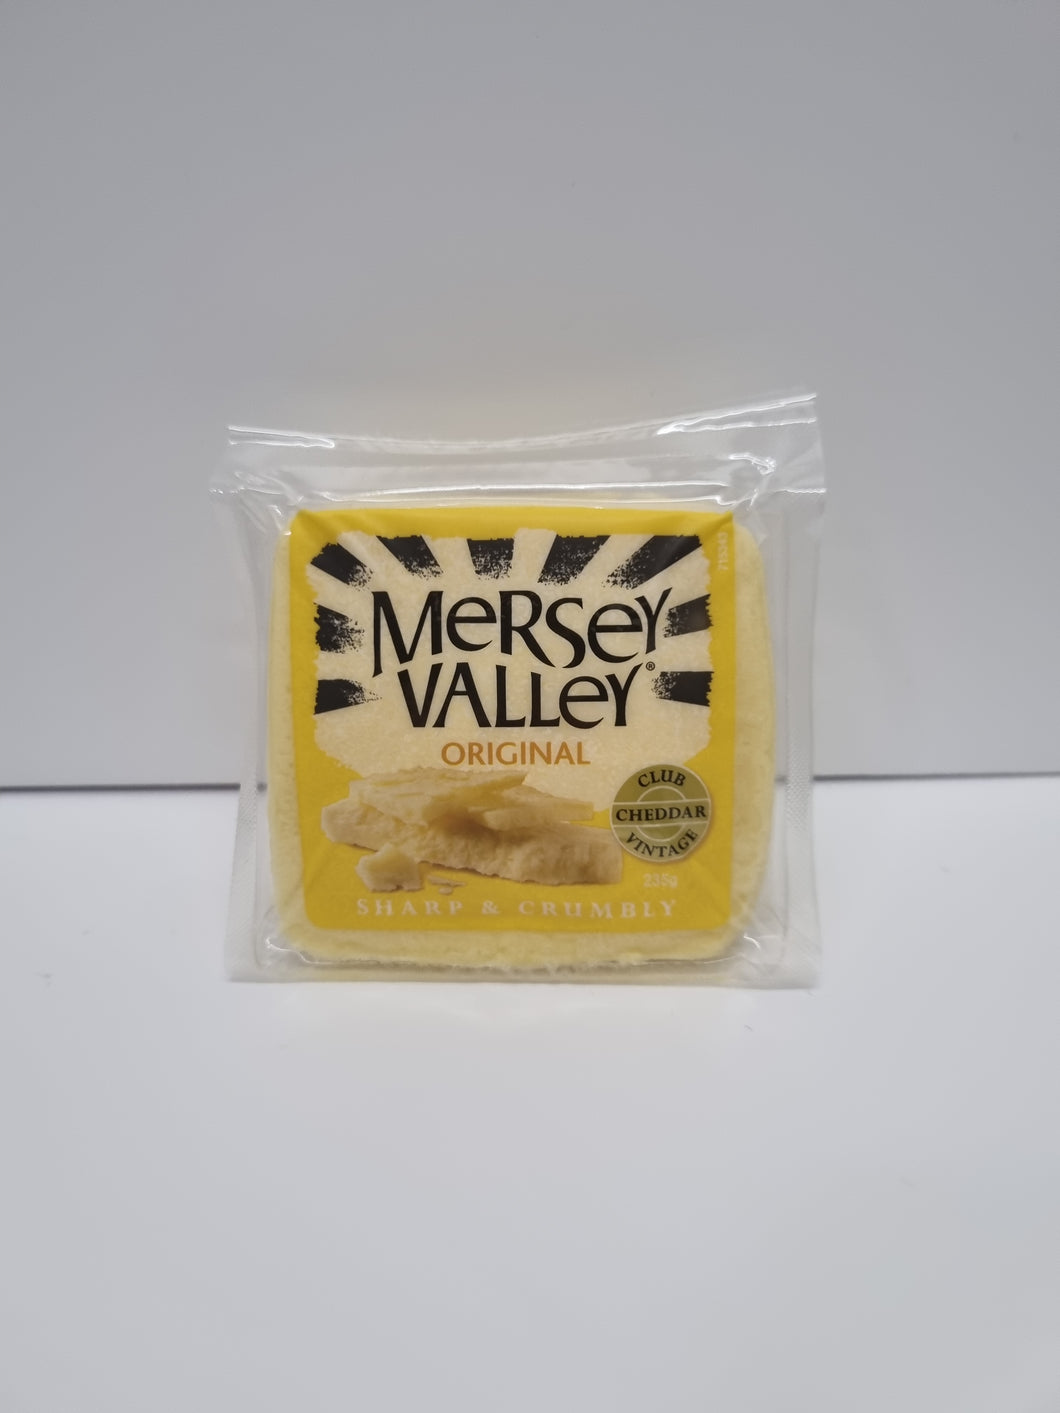 Mersey valley (original)